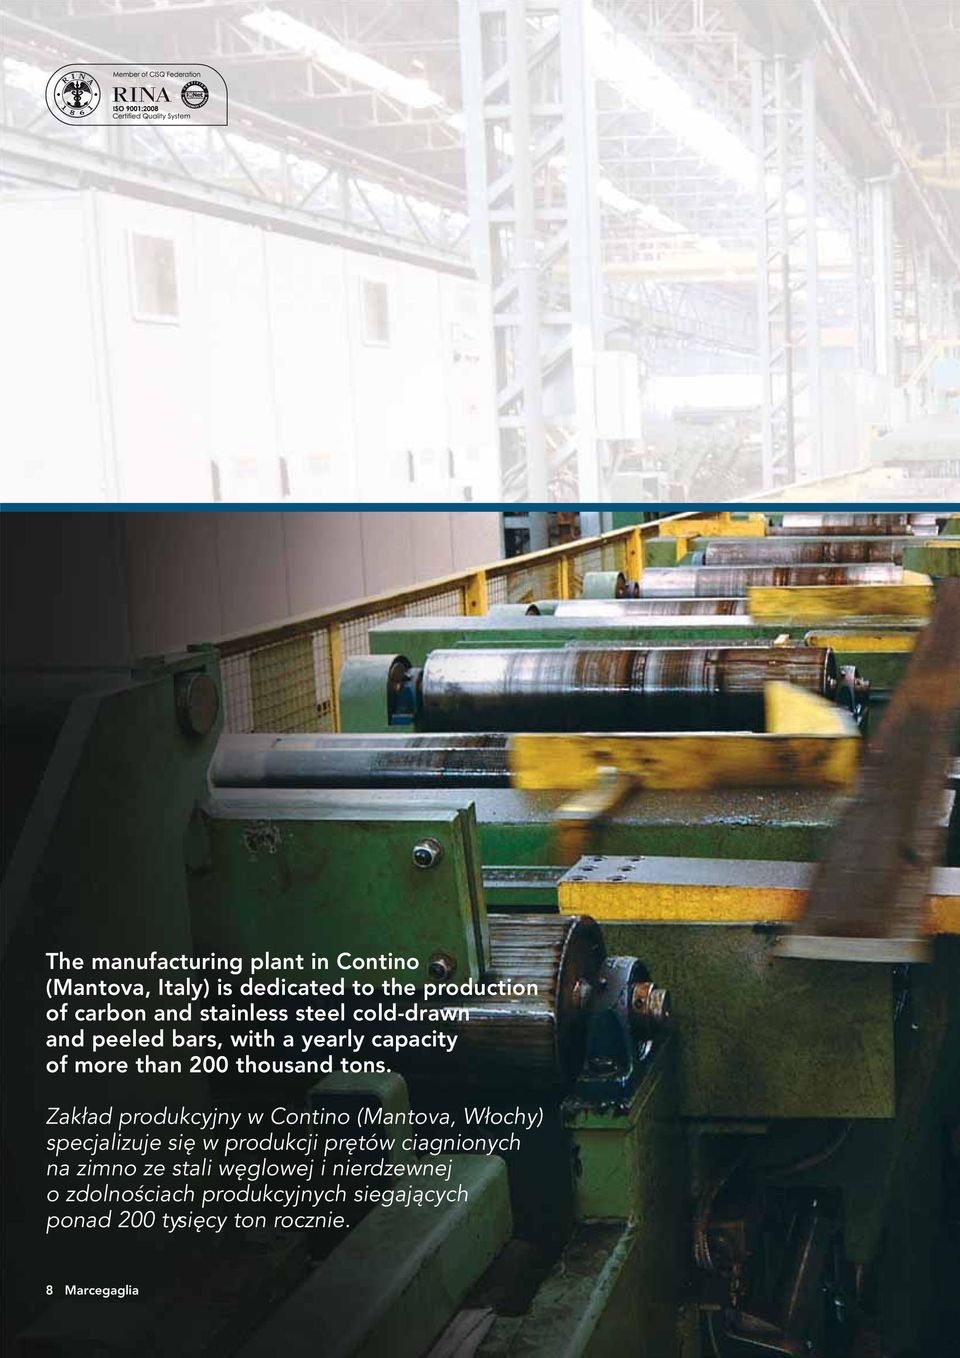 Zakład produkcyjny w Contino (Mantova, Włochy) specjalizuje się w produkcji prętów ciagnionych na zimno